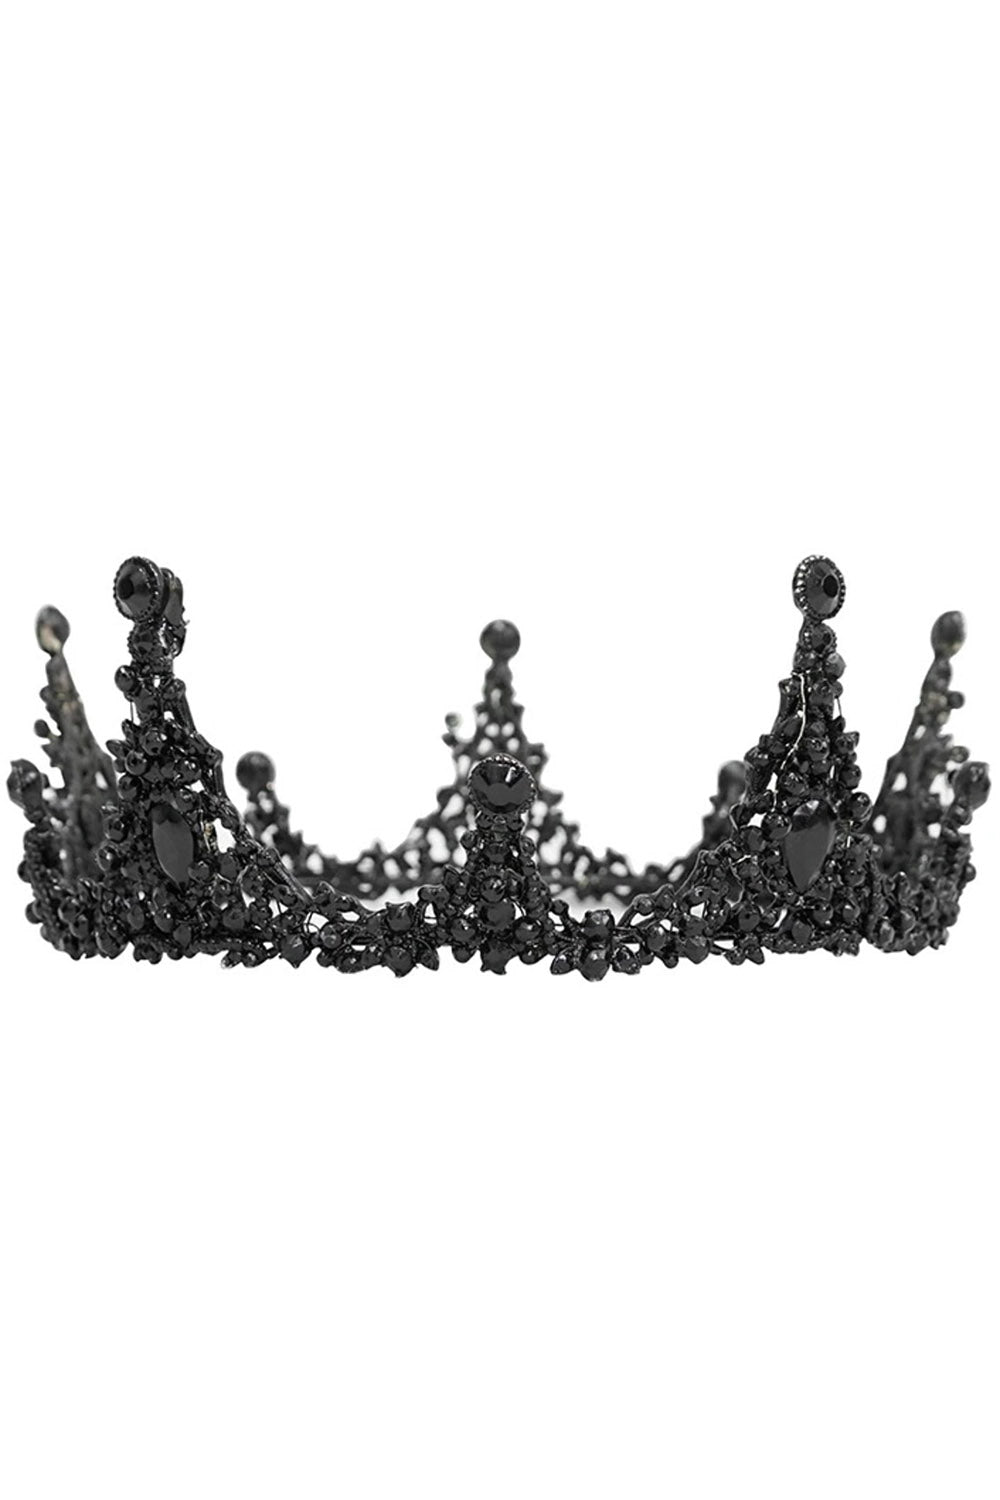 Blackcraft Gothic Crown